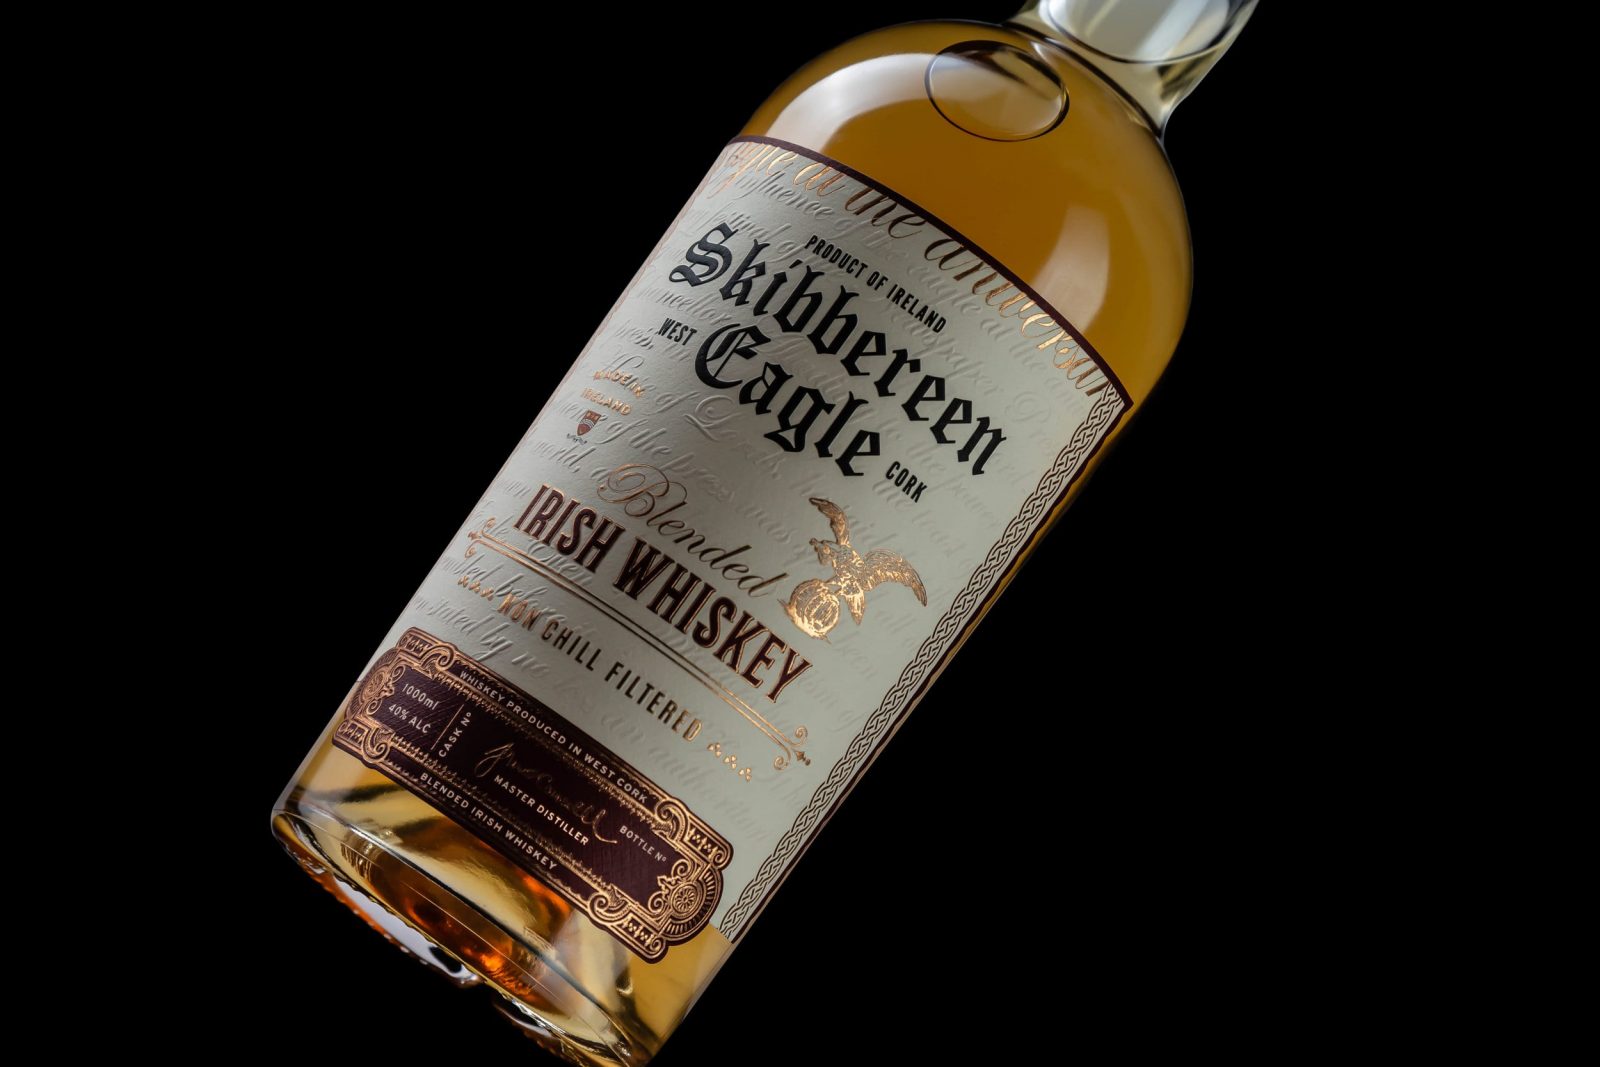 Skibbereen Eagle Blended Whisky